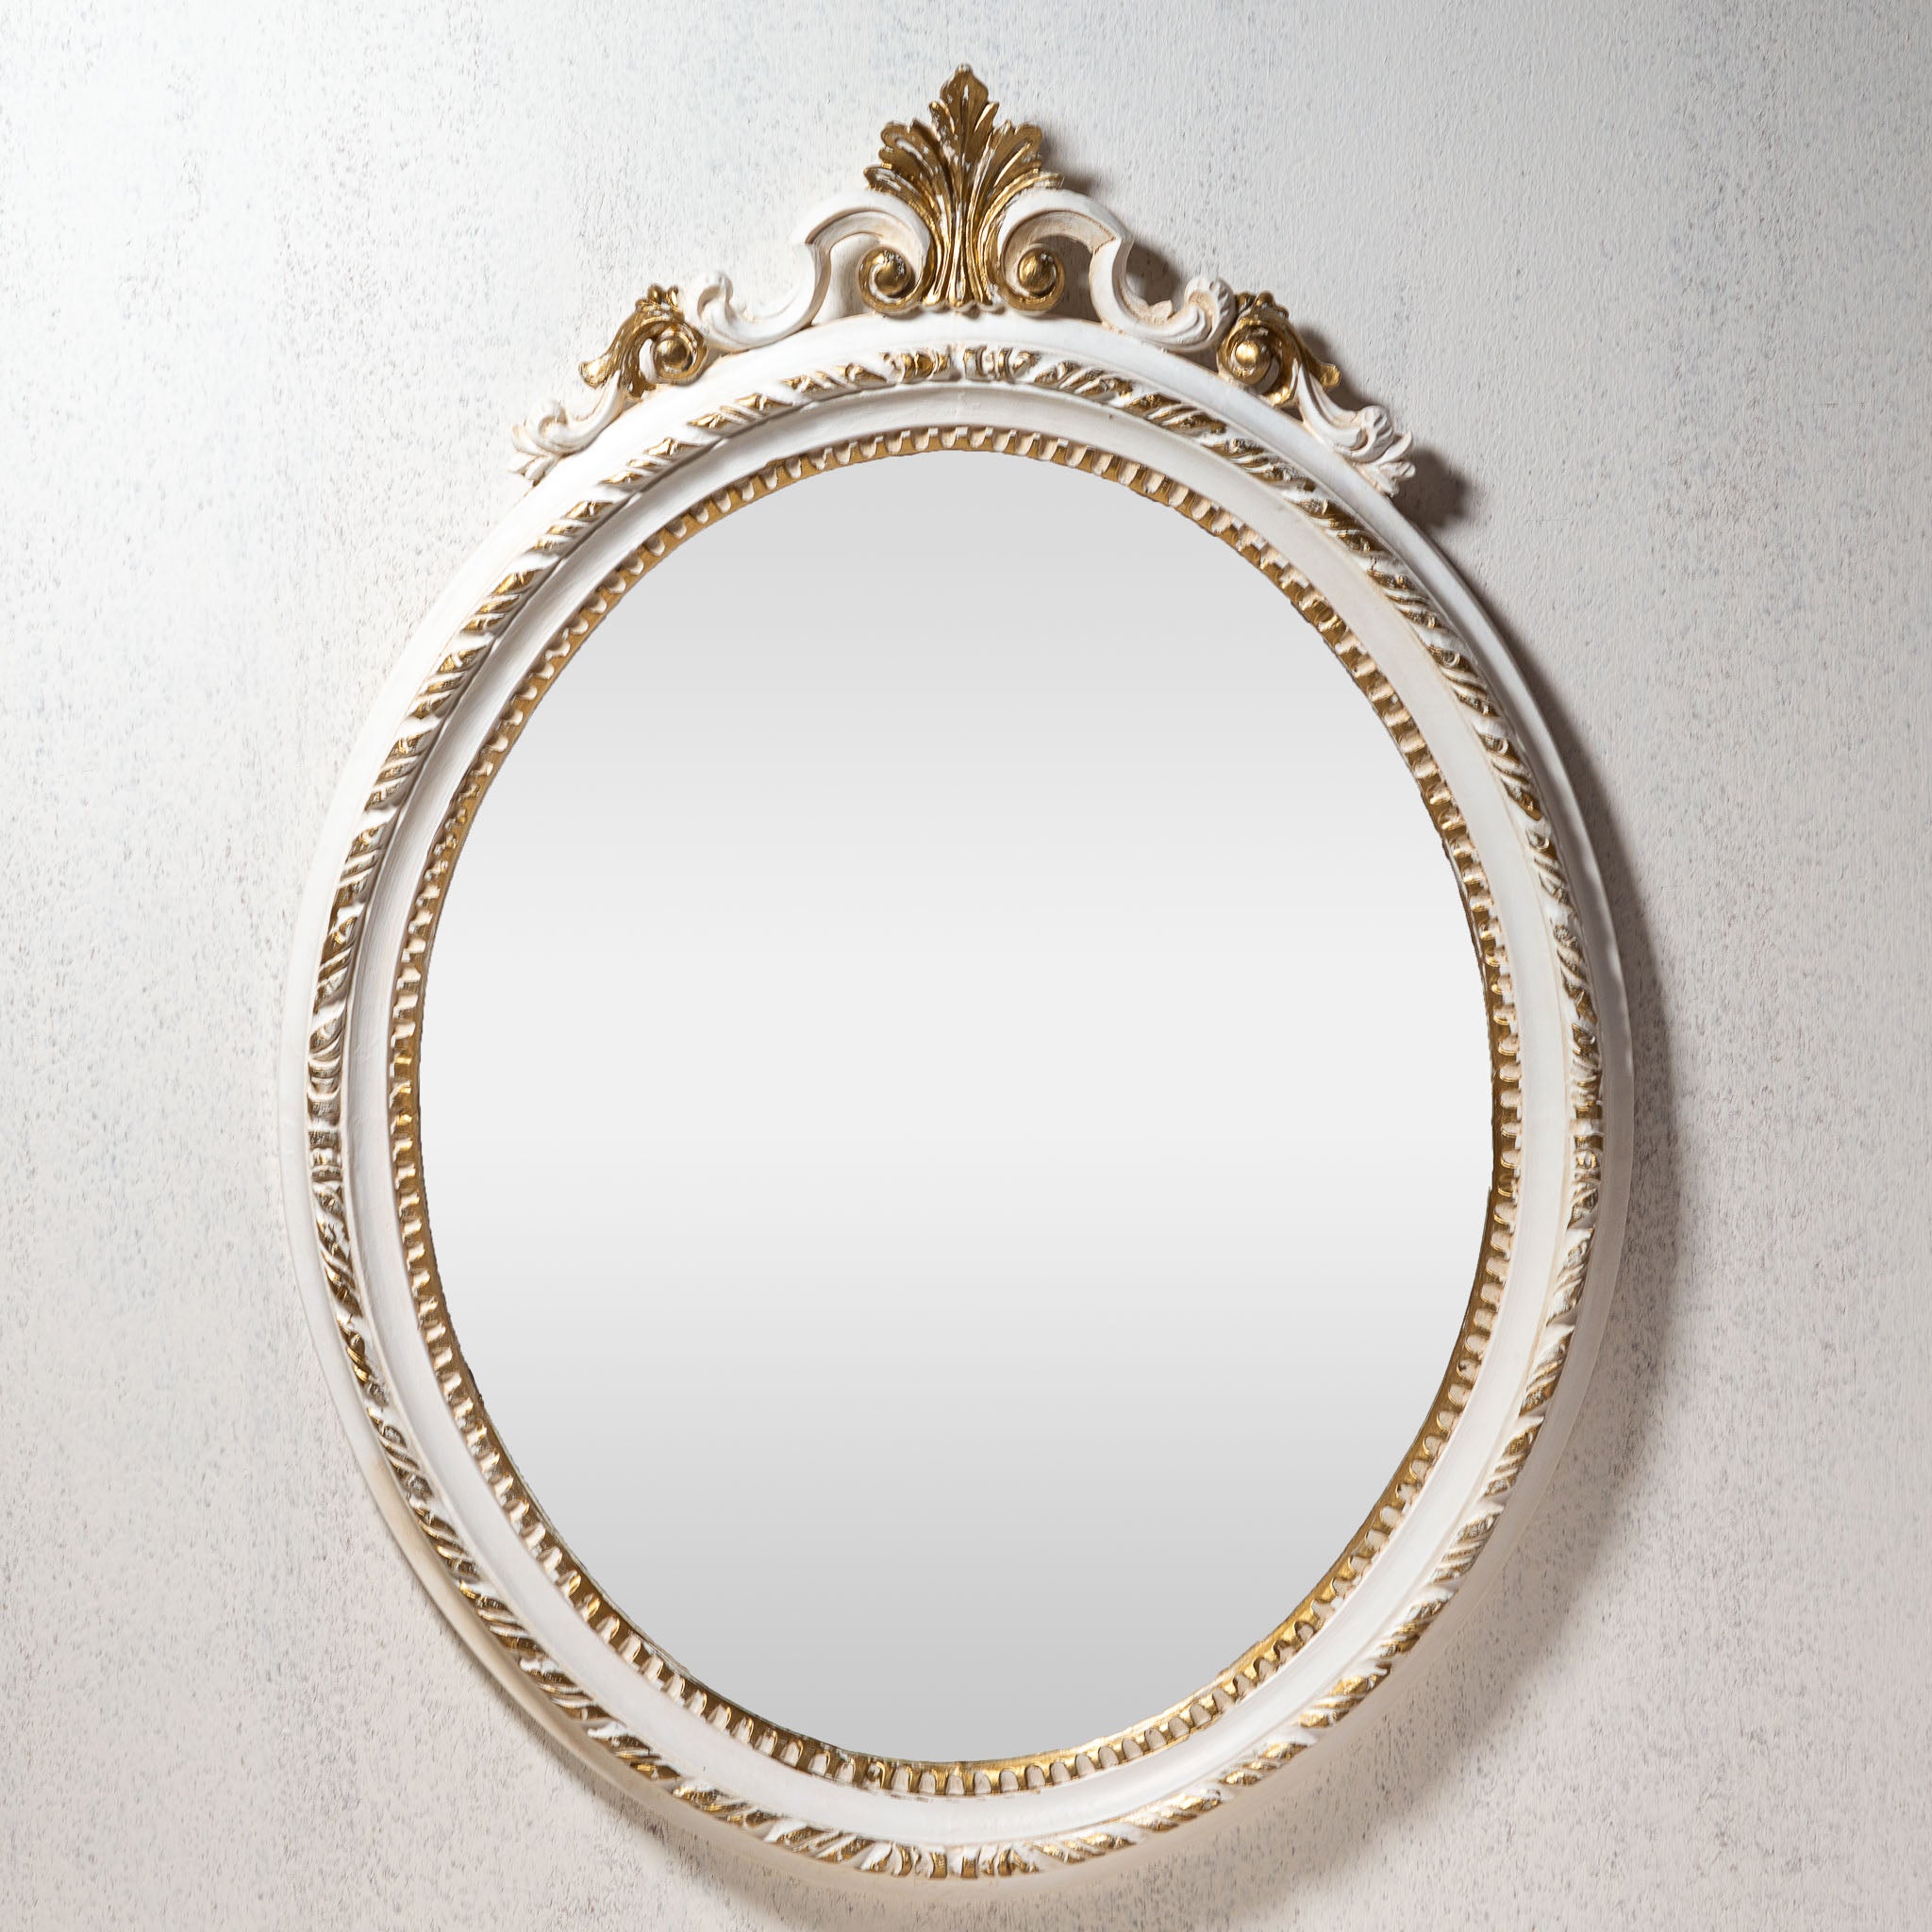 イタリア製 アンティークテイスト ロココ調ウォールミラー 壁掛け鏡 